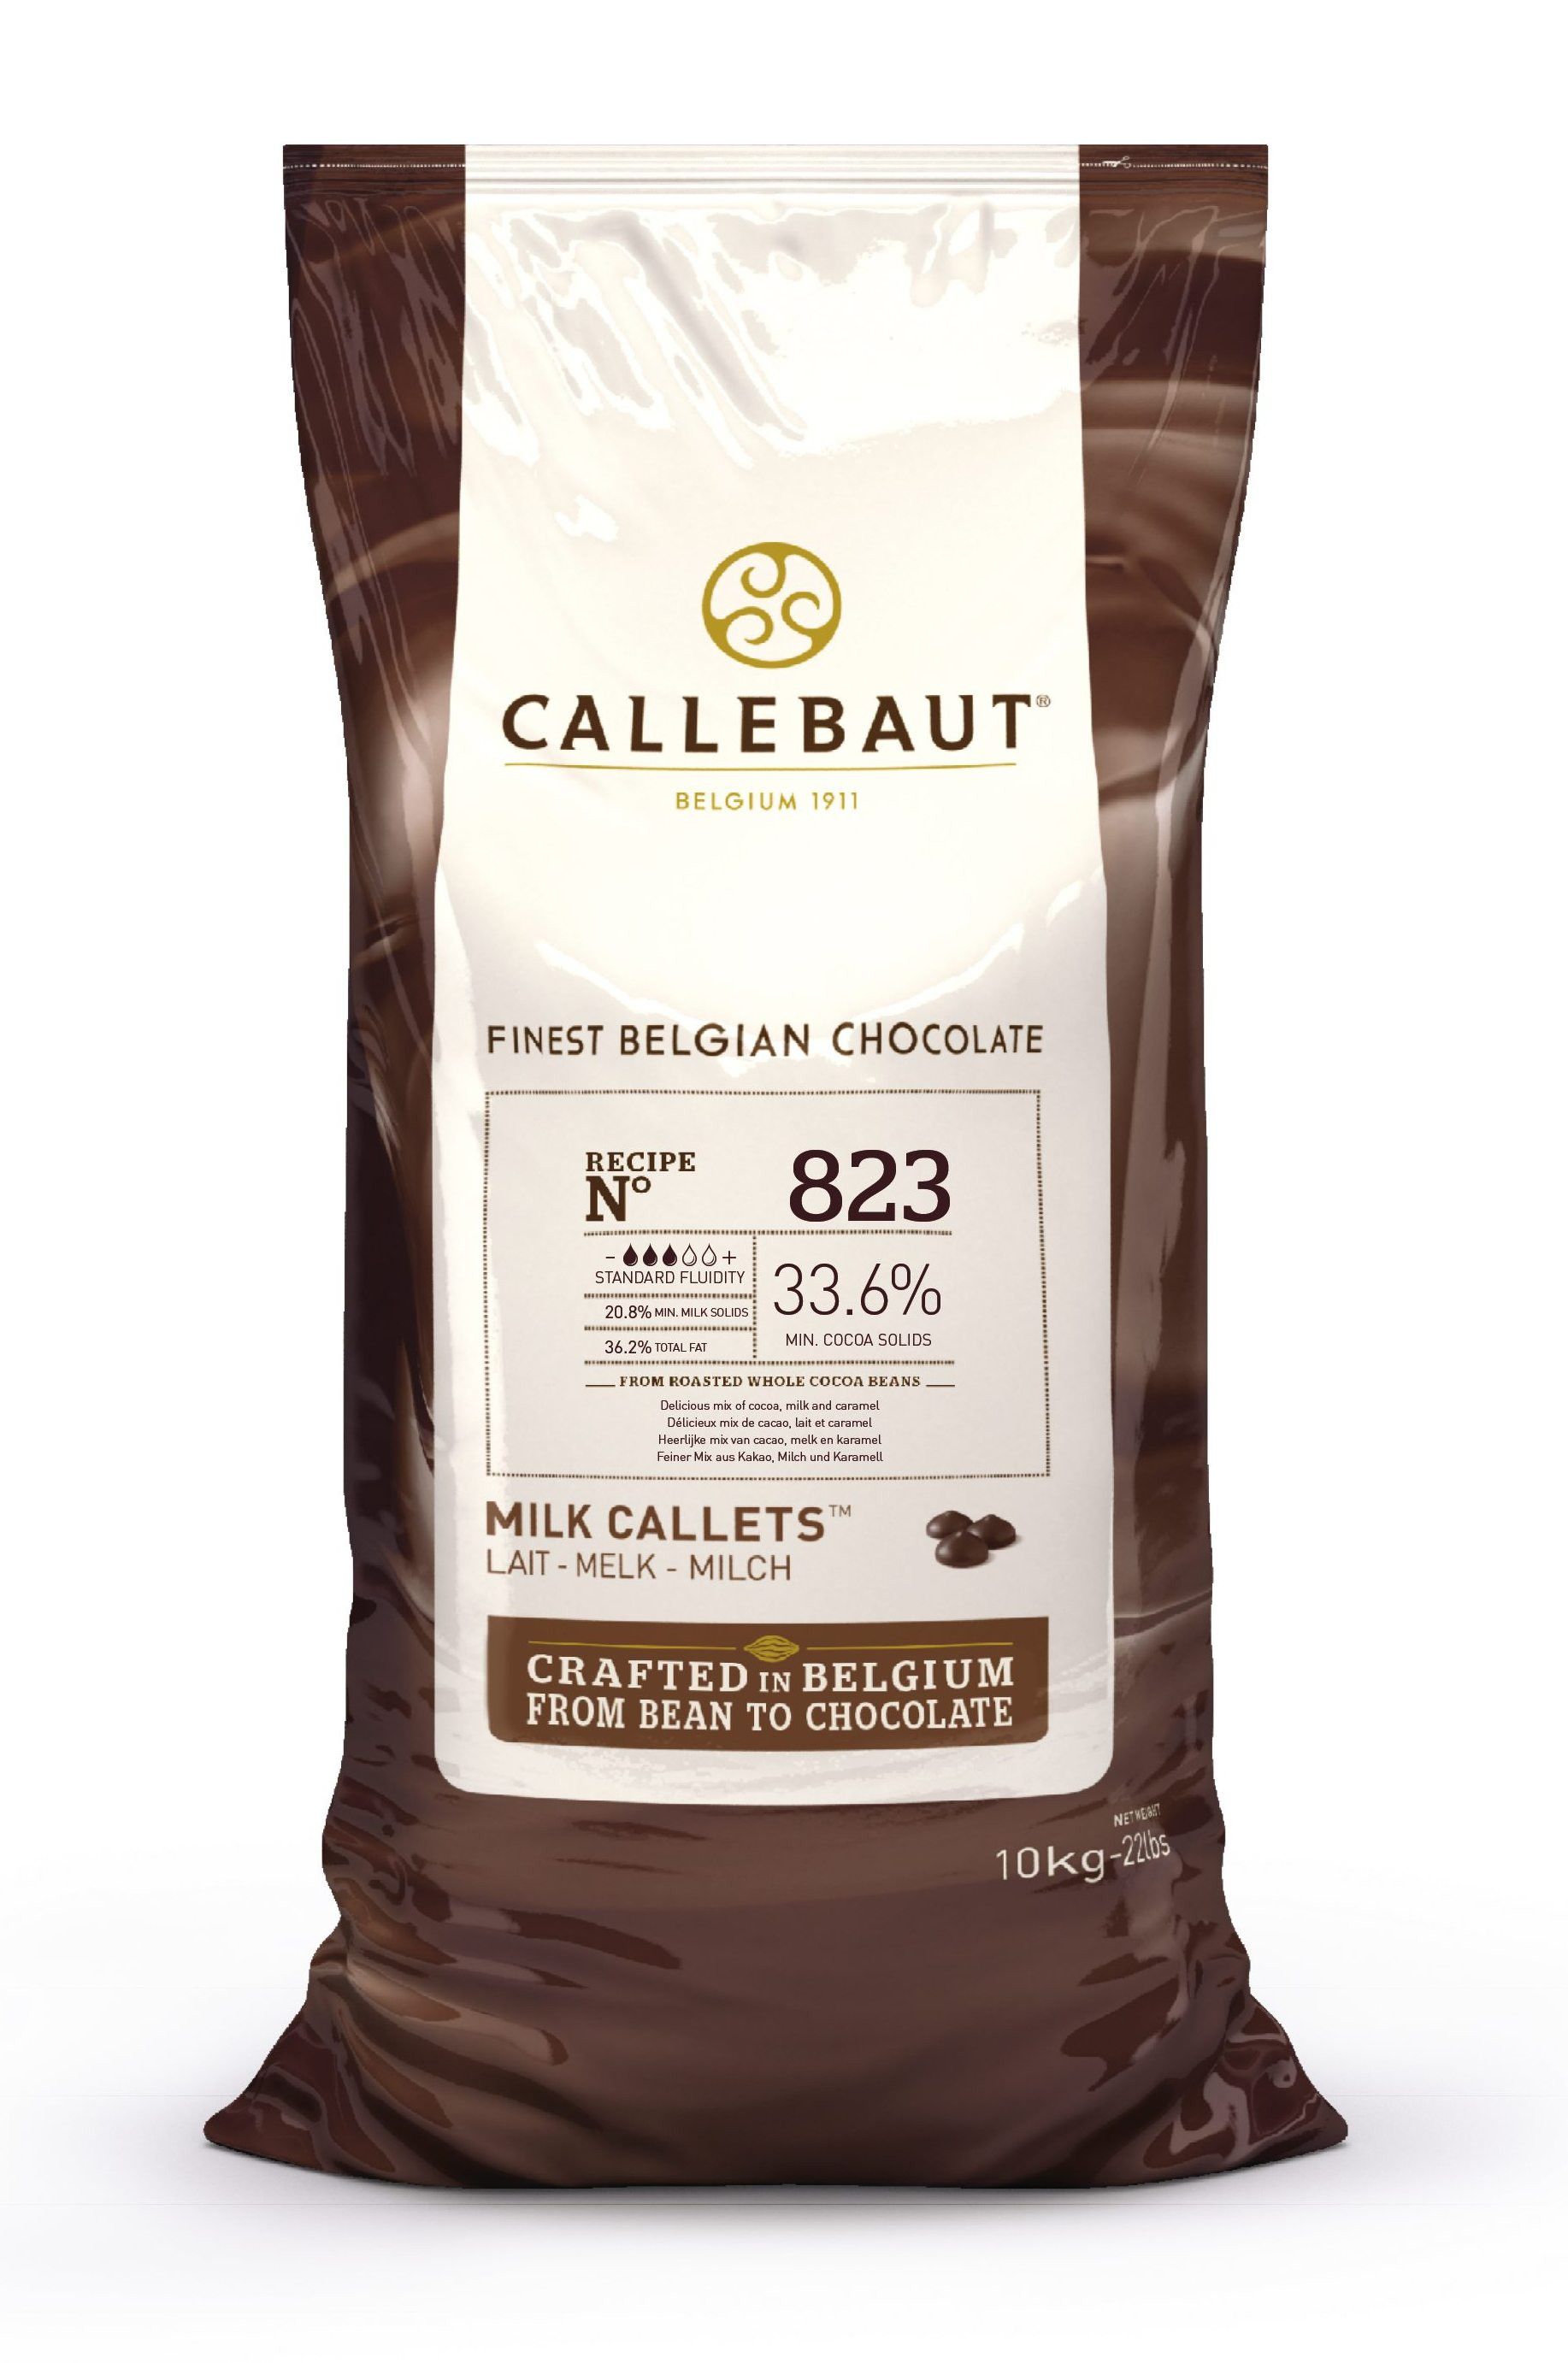 ⋗ Шоколад бельгийский Callebaut 823  молочный 33,6% в дисках, 10кг купить в Украине ➛ CakeShop.com.ua, фото